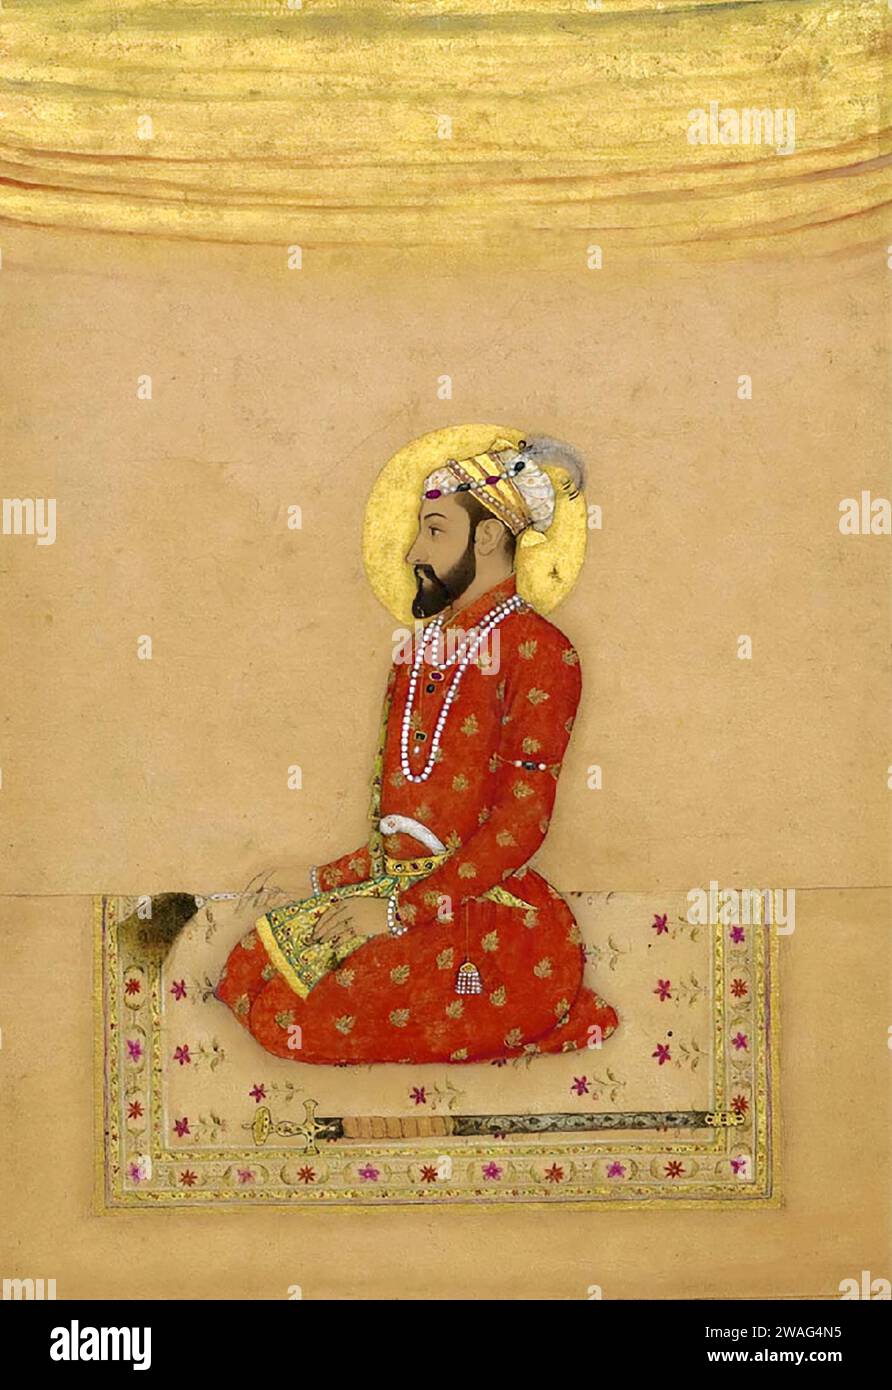 Bahadur Shah I.. Mirza Muhammad Mu'azzam (1643-1712), comunemente noto come Bahadur Shah i e Shah Alam i, fu l'ottavo imperatore moghul dal 1707 al 1712, intorno al 1670 Foto Stock